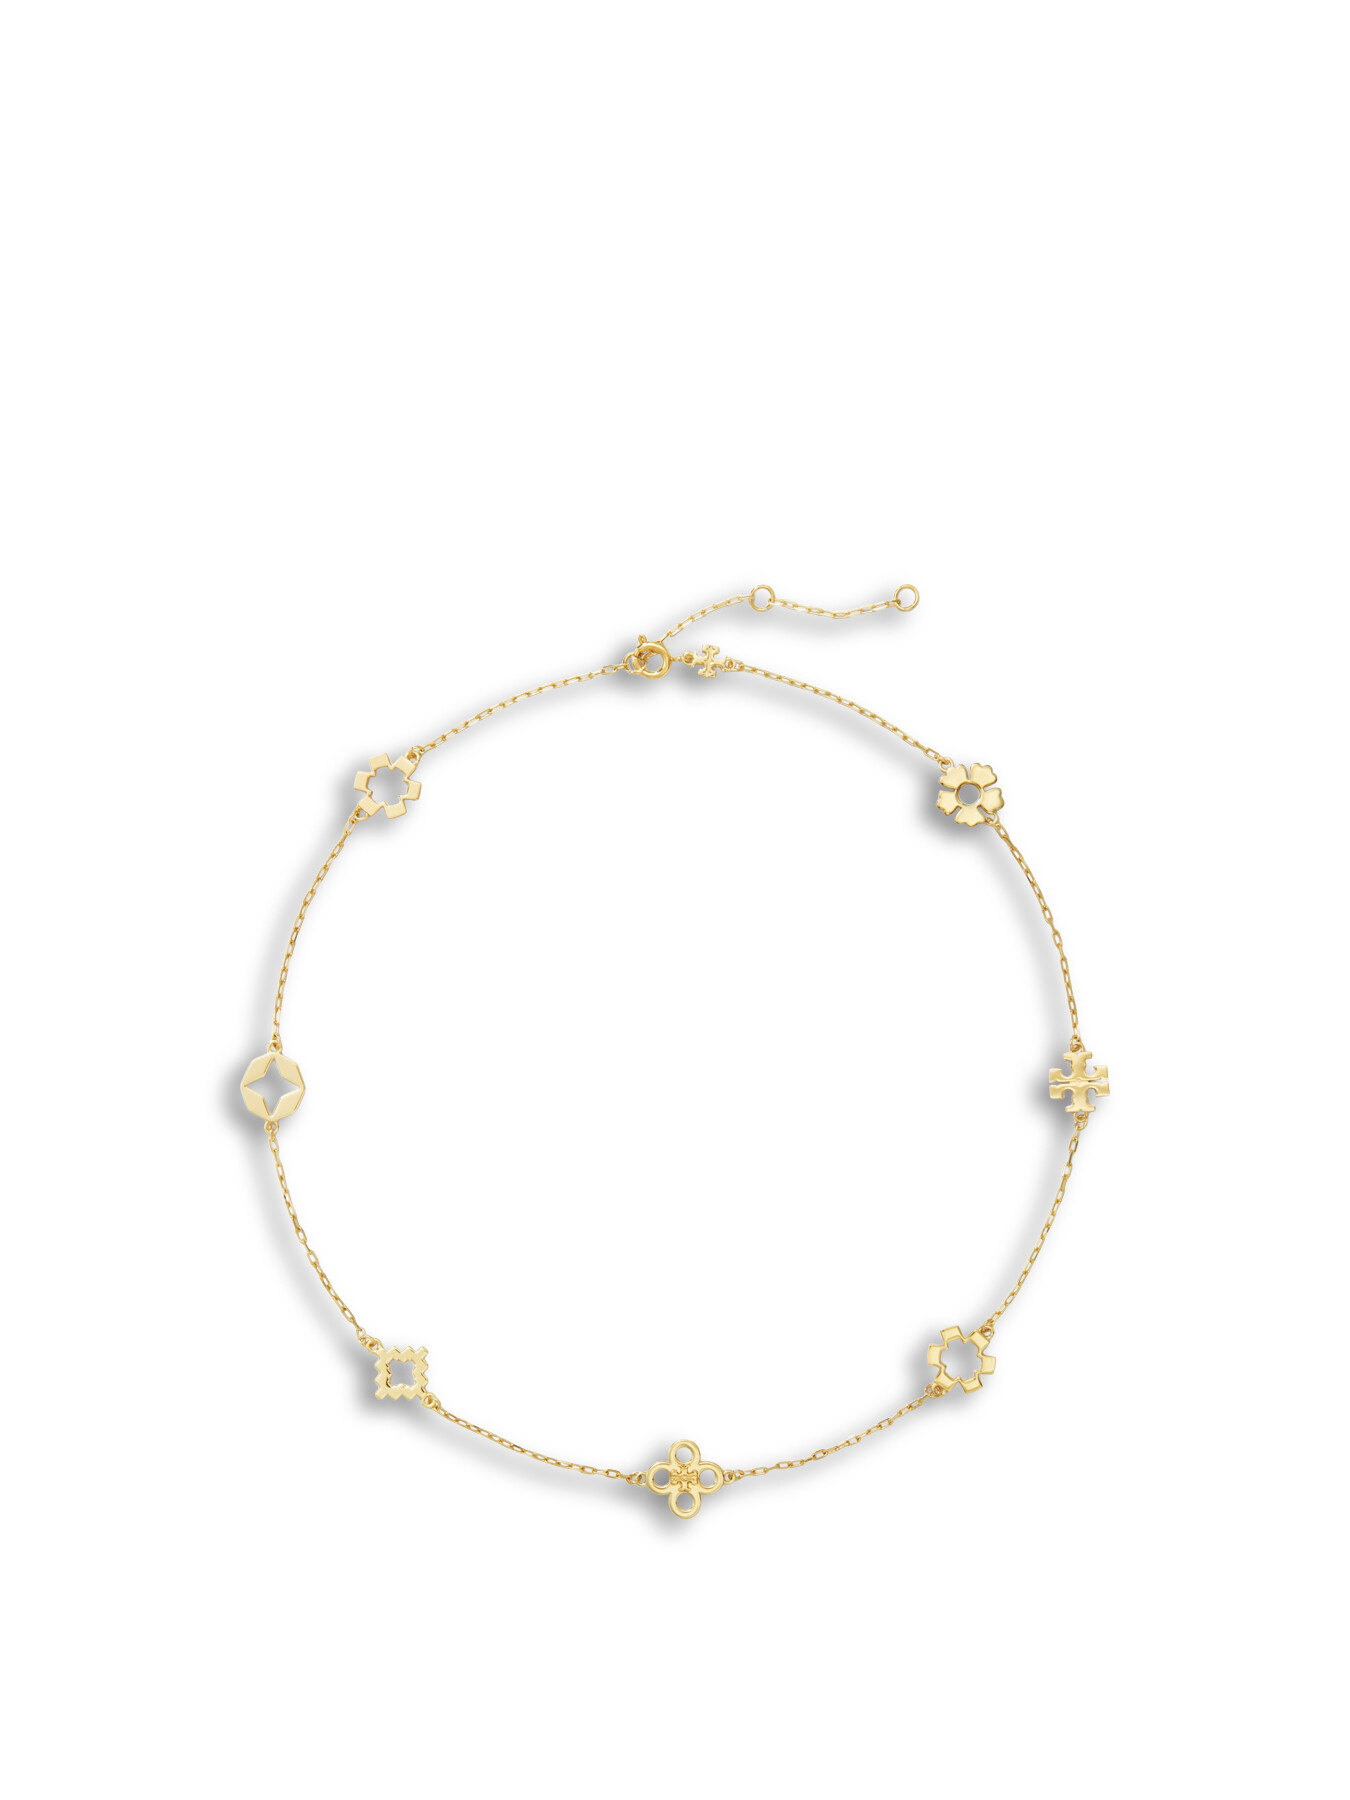 Tory Burch Women's Kira Clover Necklace Gold